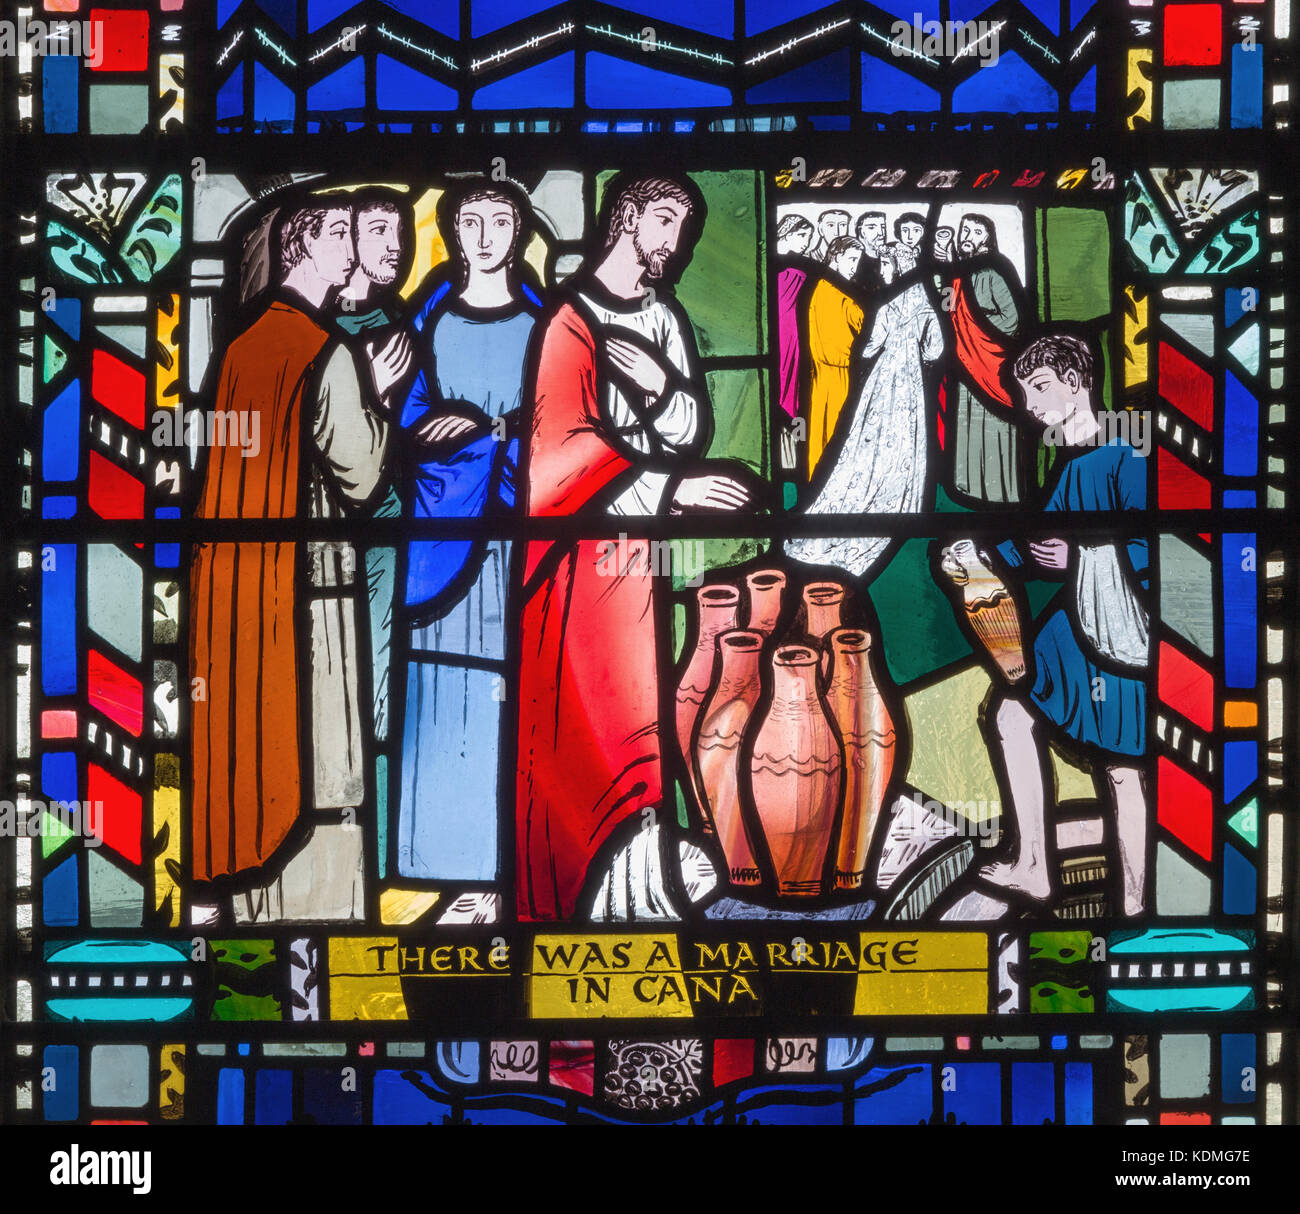 Londra, Gran Bretagna - 16 settembre 2017: il vetro macchiato di lui nozze di Cana nella chiesa st etheldreda da Charles blakeman (1953 - 1953). Foto Stock